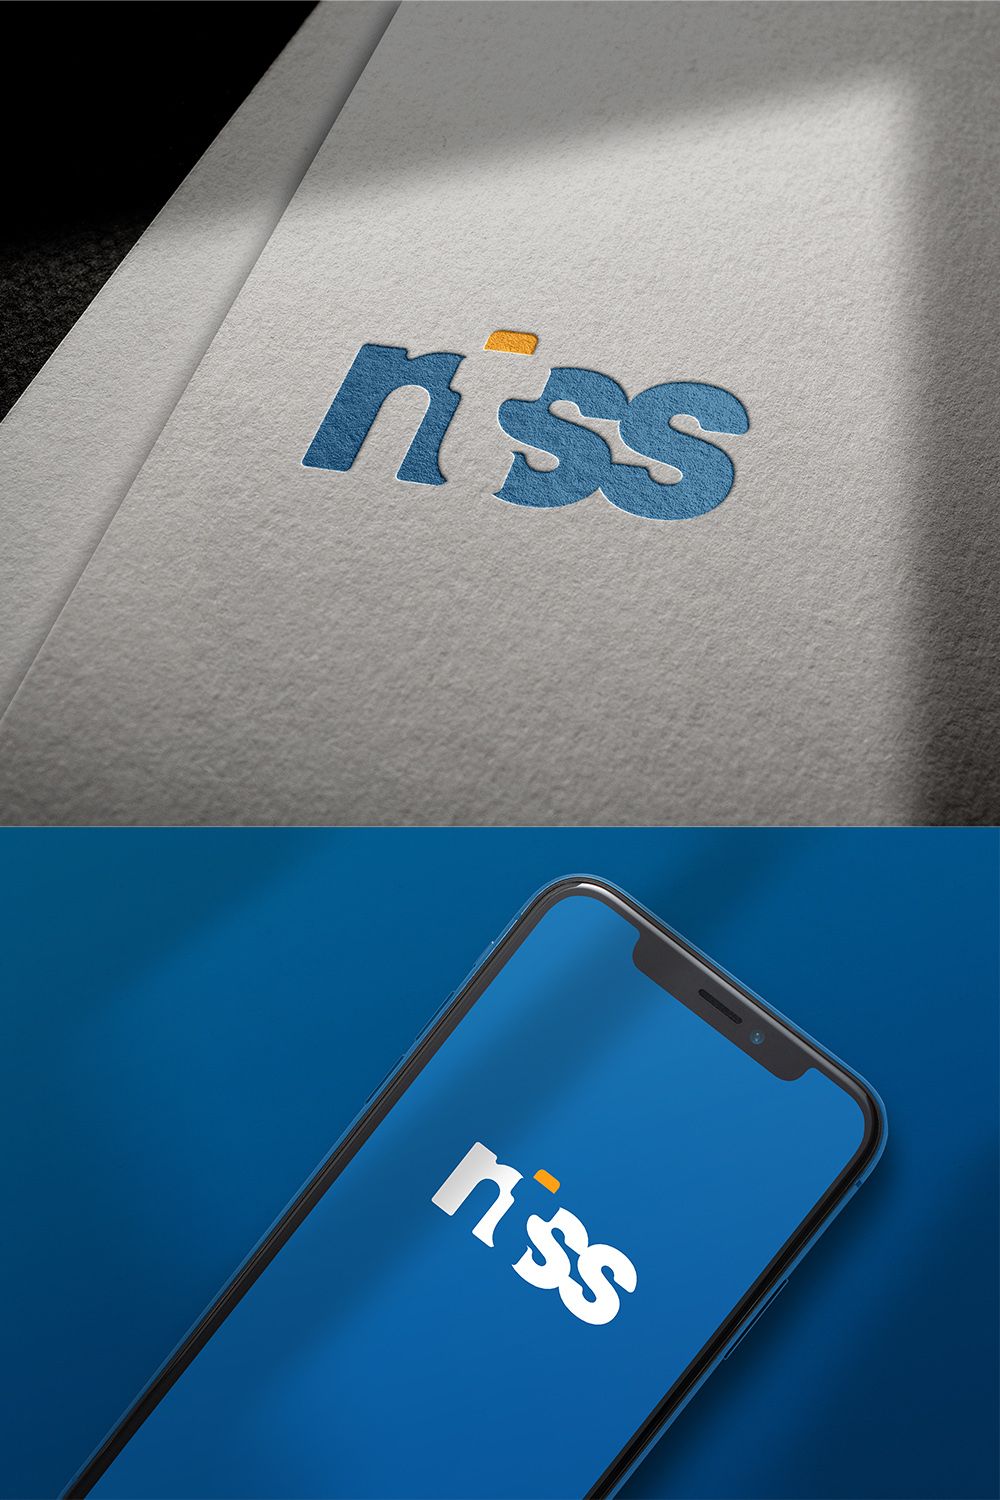 Ntss Letter Logo Design pinterest image.